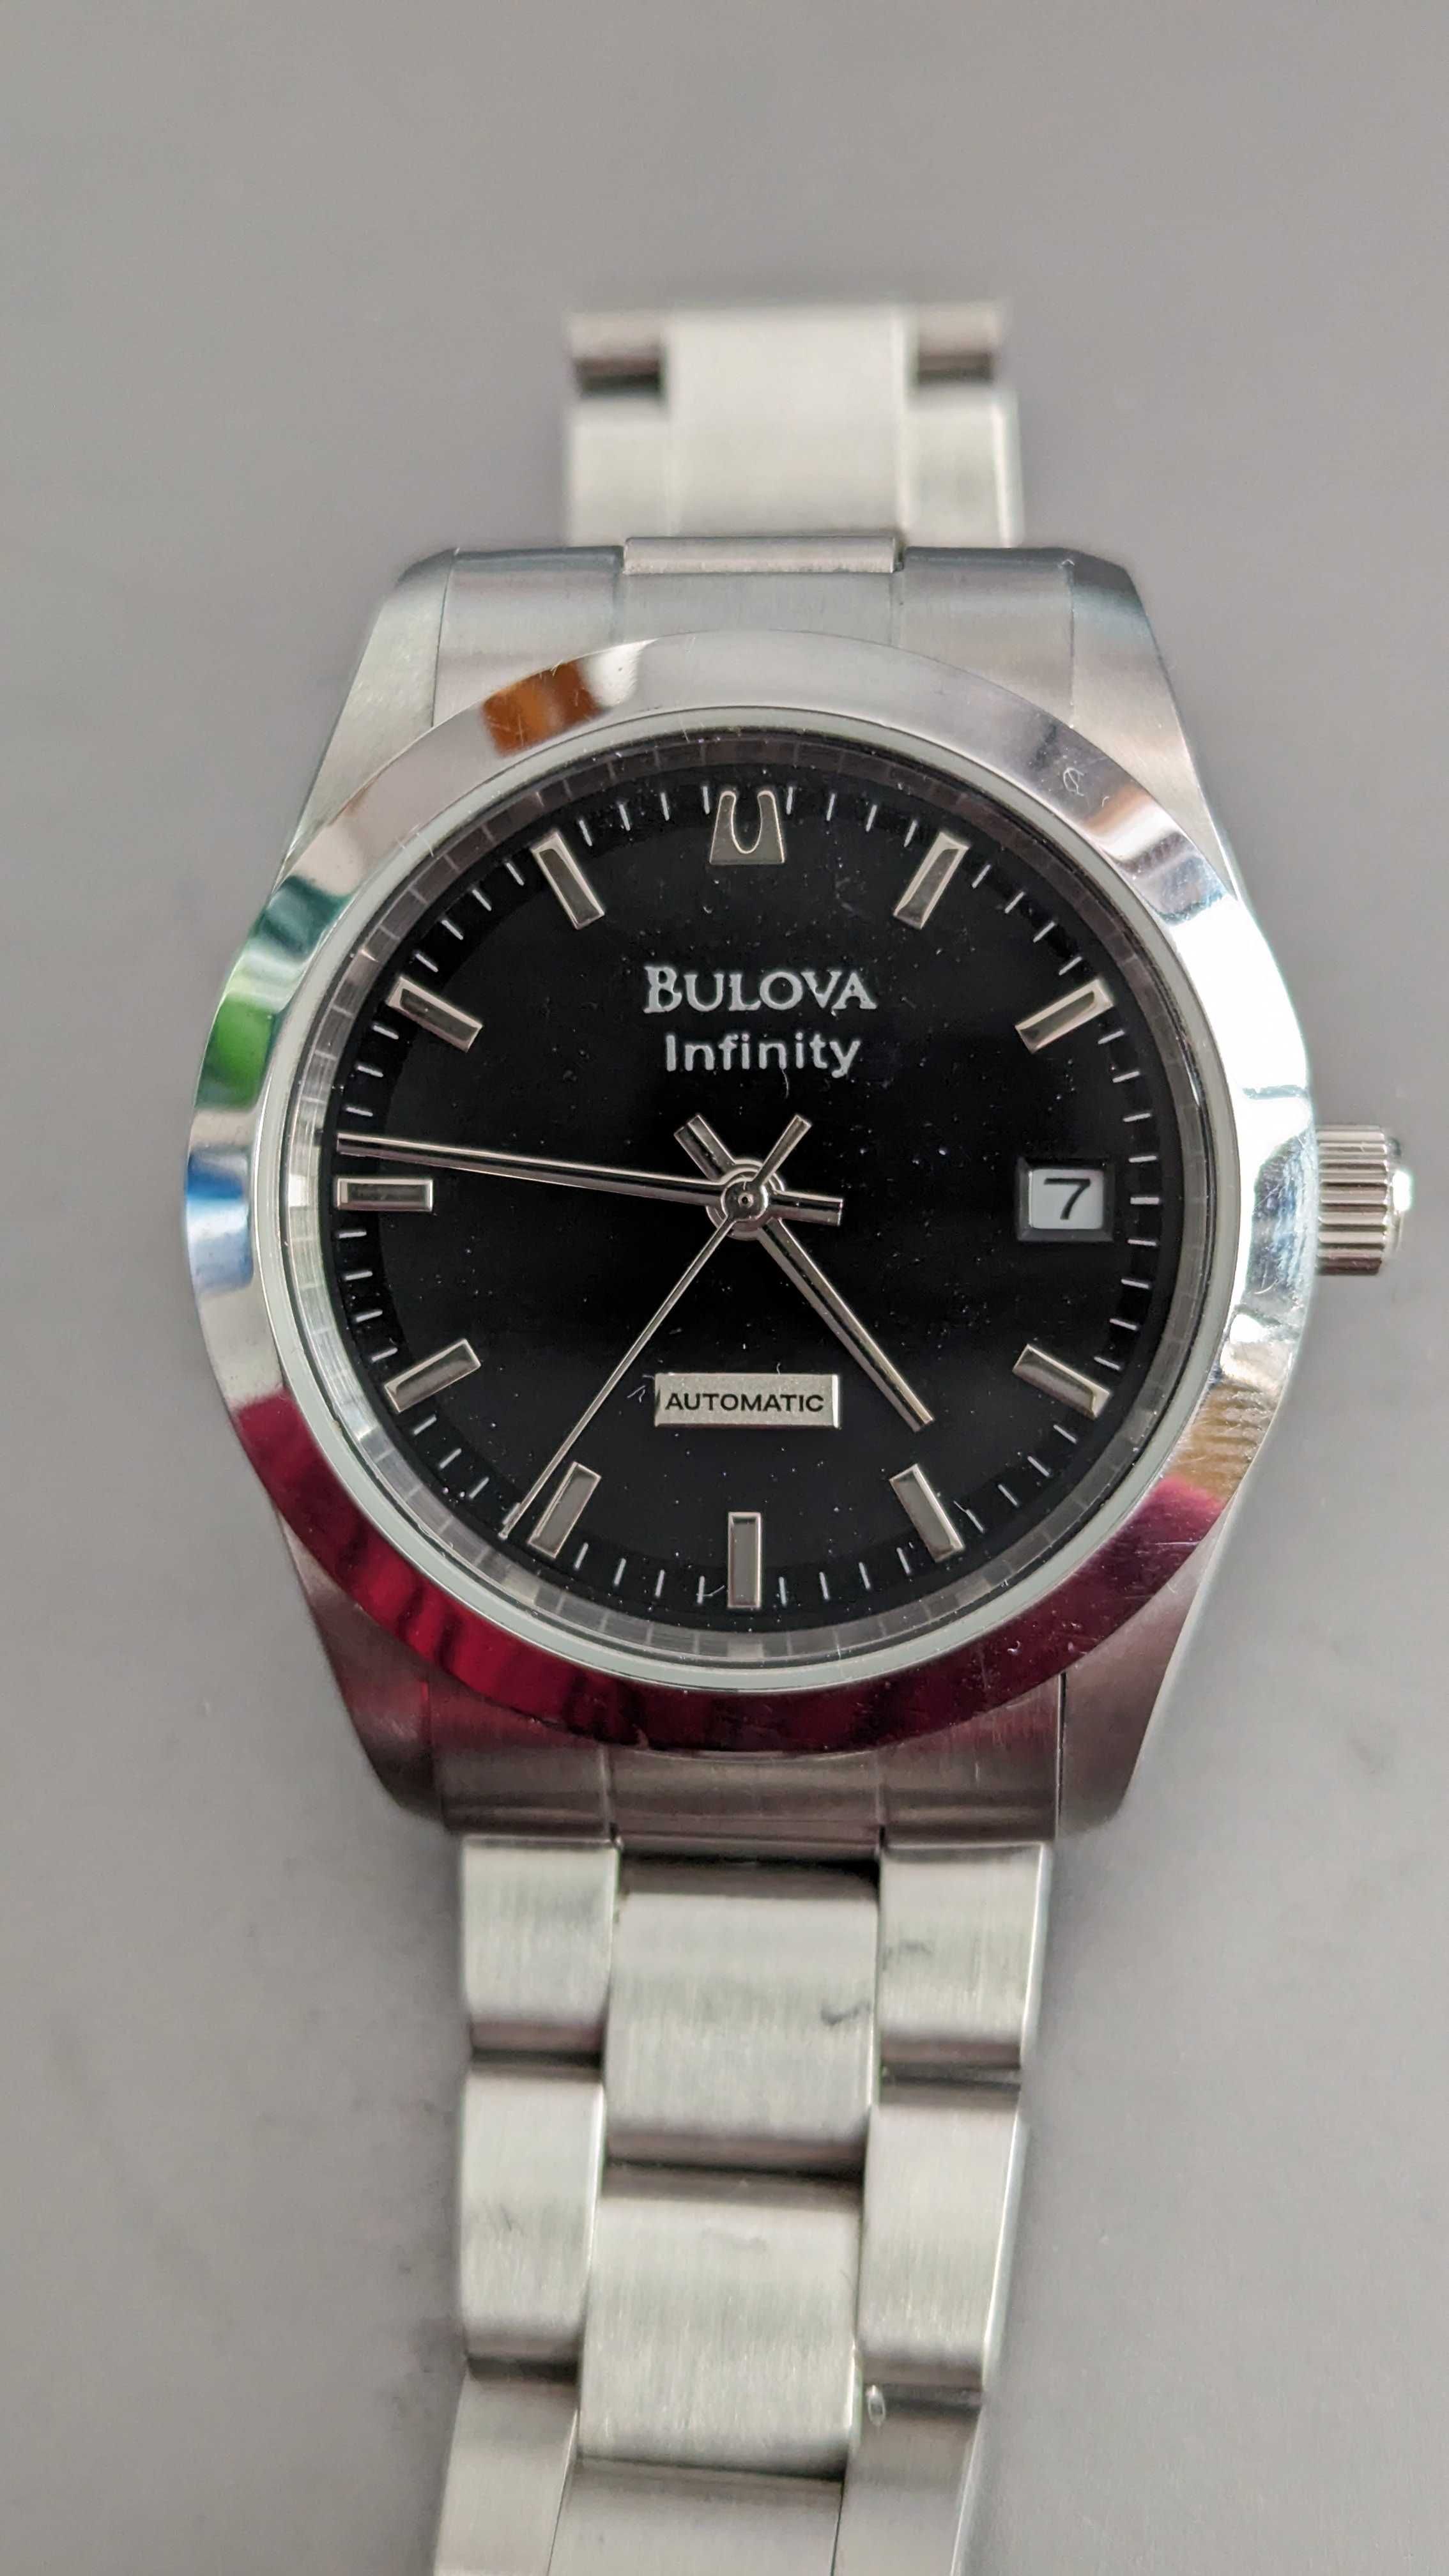 Zegarek męski Bulova Infinity automatycznie Miyota 8000 vintage